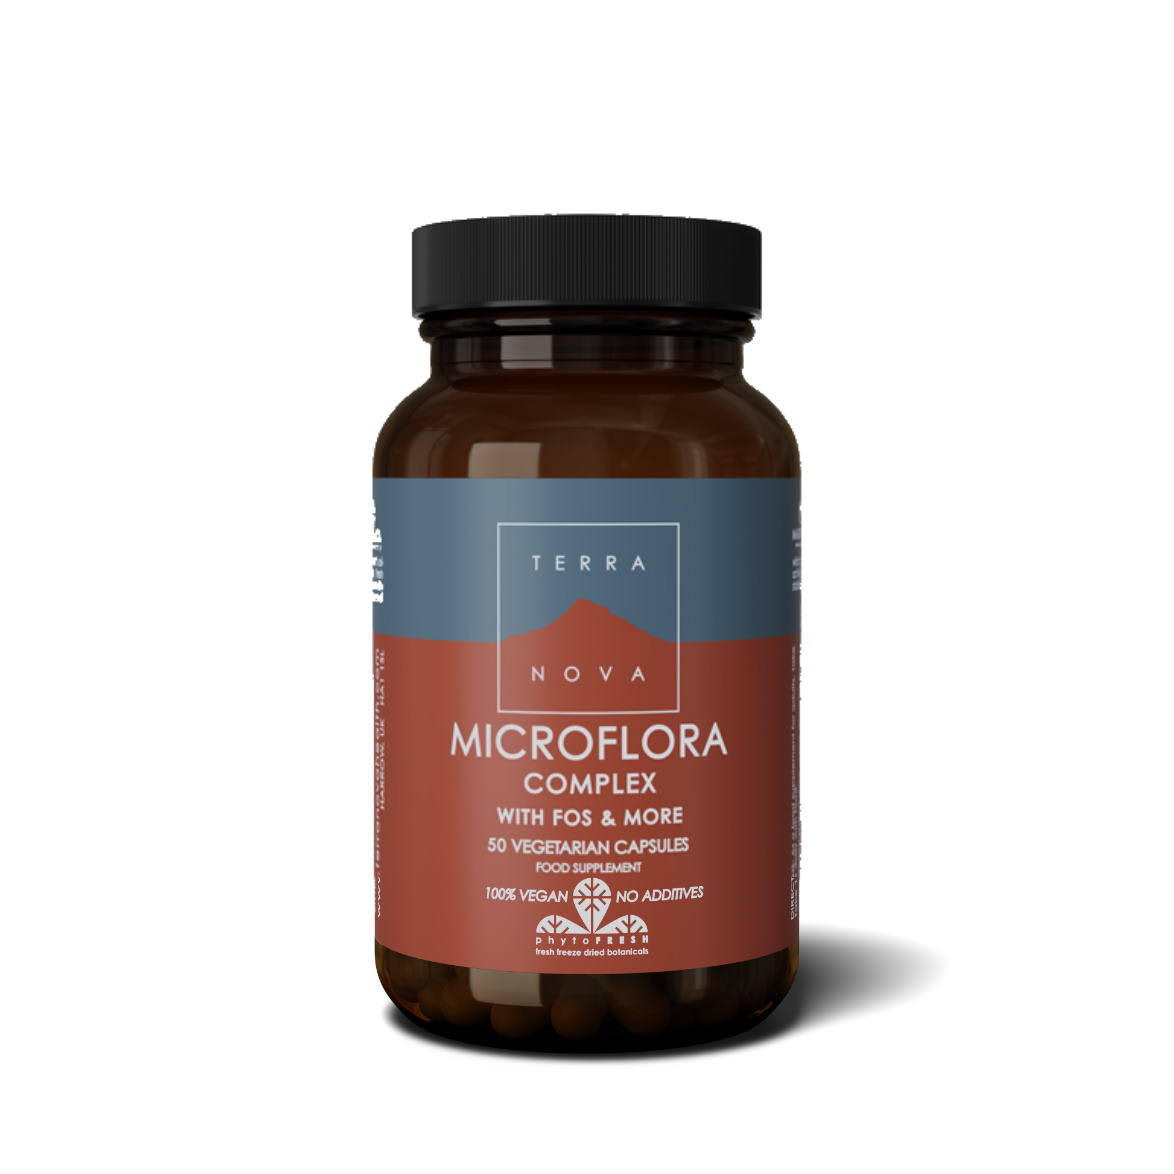 Magnifood Terra Nova Probiotic Complex - 50 Vegetarian Capsules